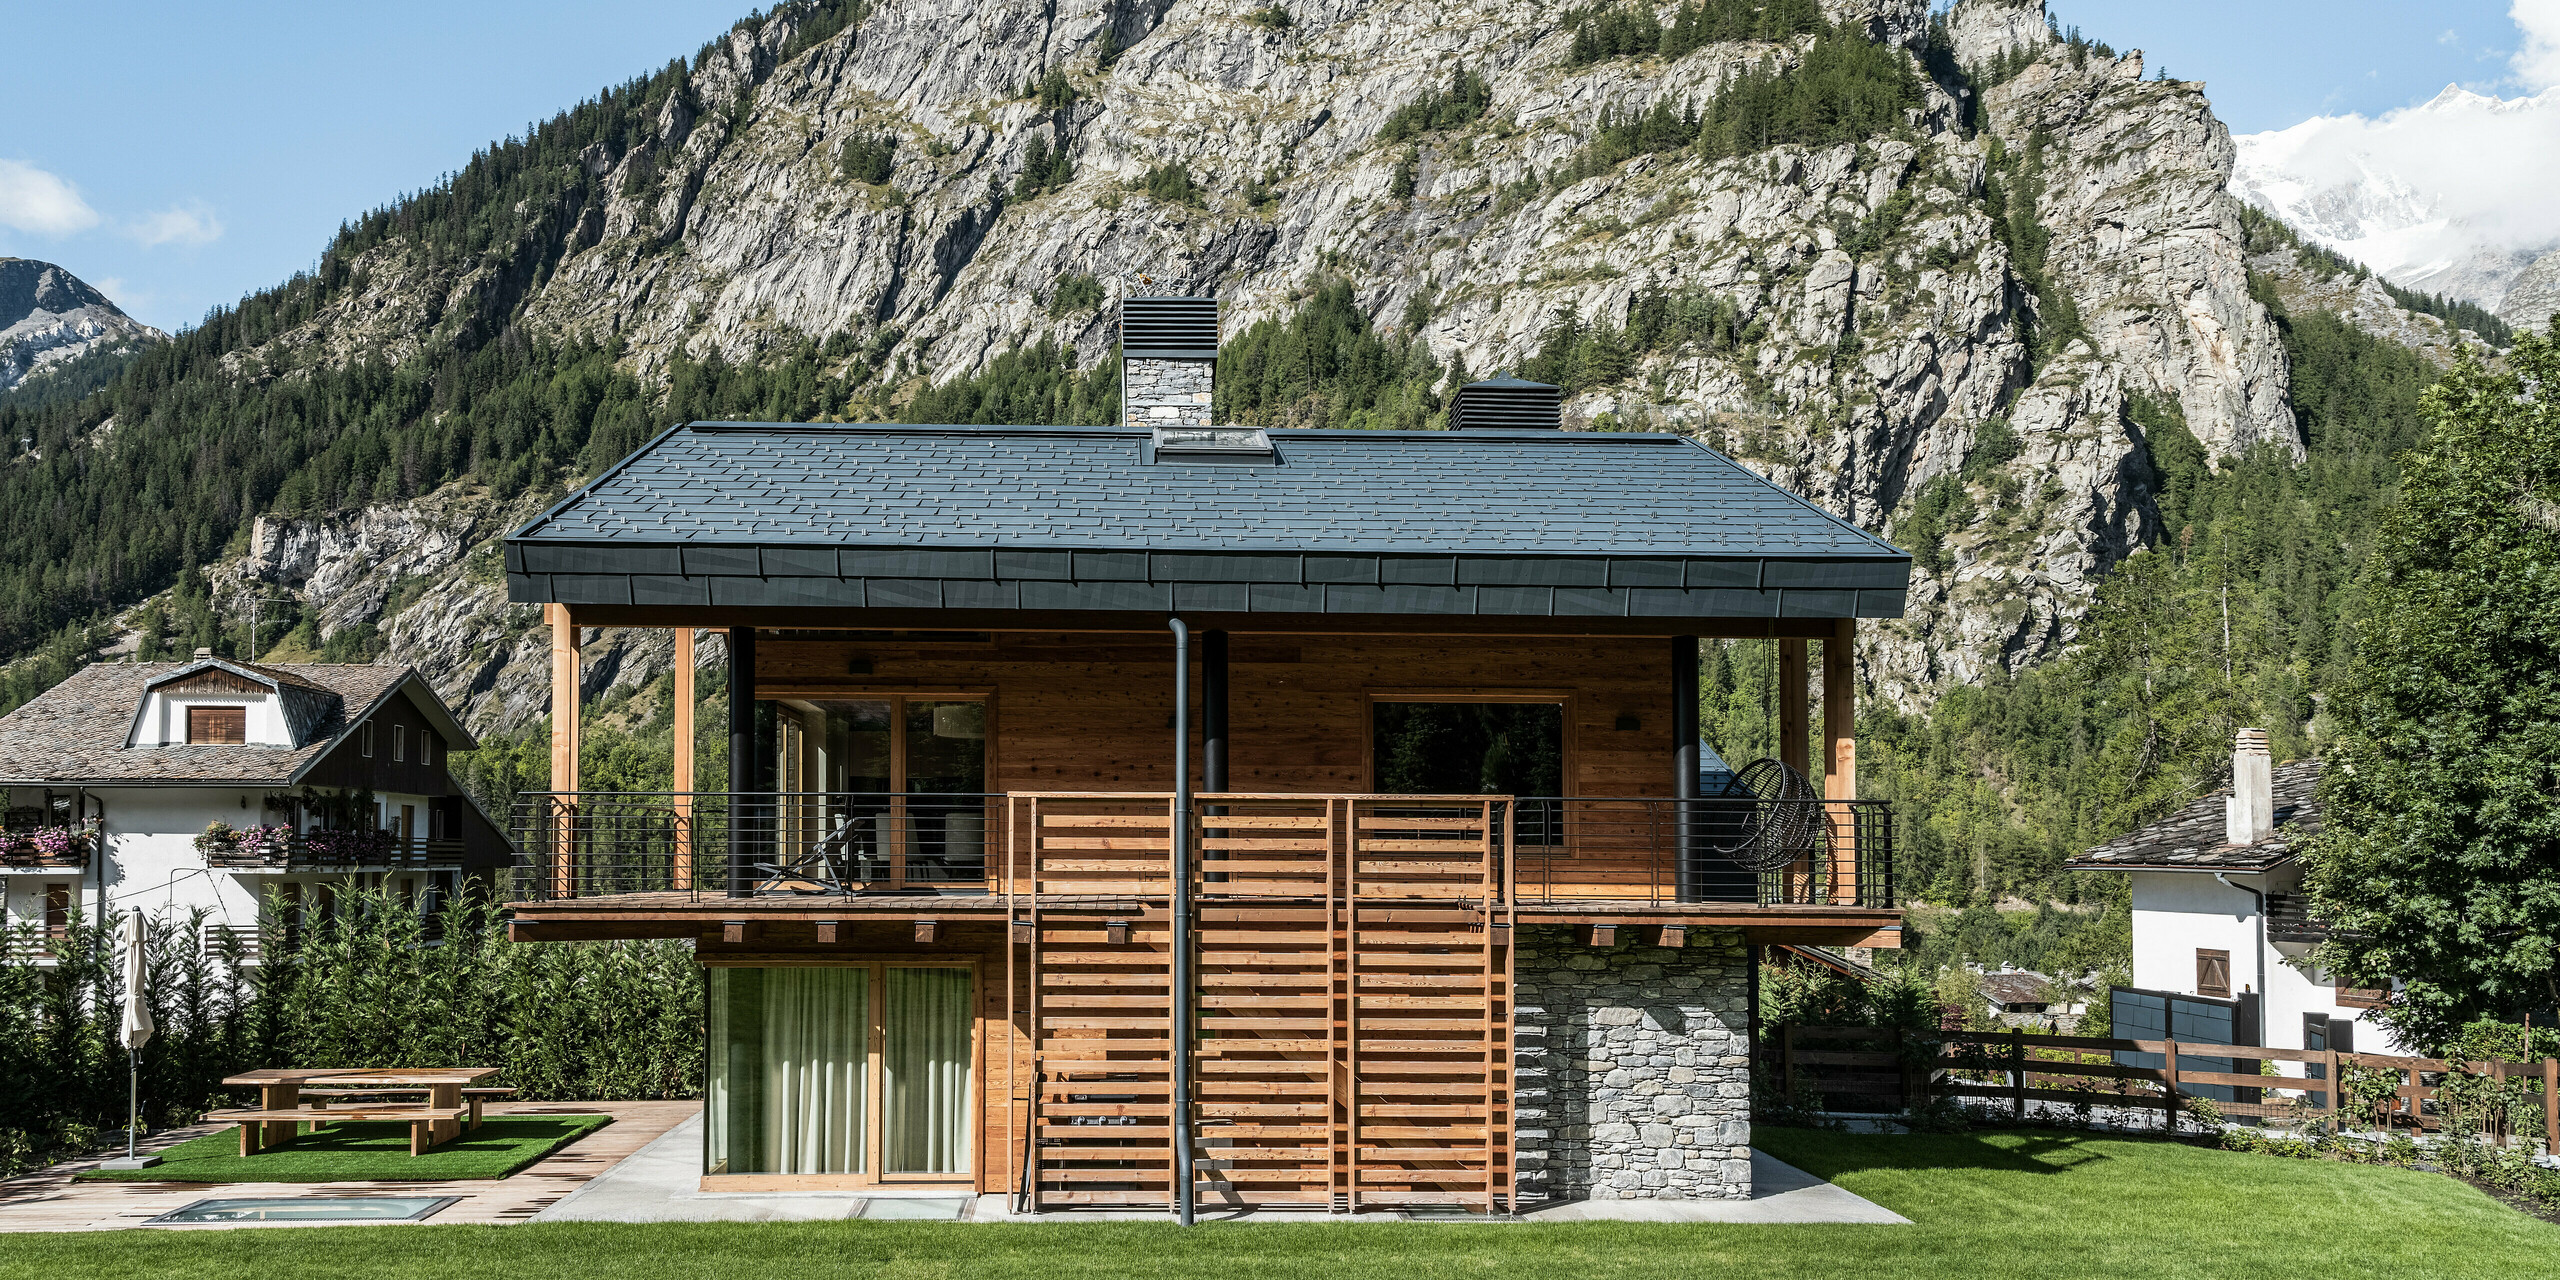 Idylická vila v Courmayeur s harmonickou kombinací dřeva, kamene a hliníku na fasádě. Střešní a fasádní panely PREFA FX.12 v P.10 břidlicové jsou prezentovány na působivém horském pozadí, které zdůrazňuje alpskou atmosféru. Výrazné detaily, jako je prostorné zábradlí balkónu a velká okna, poskytují otevřenou a přívětivou atmosféru, zatímco udržovaná zahrada zve k relaxaci venku.